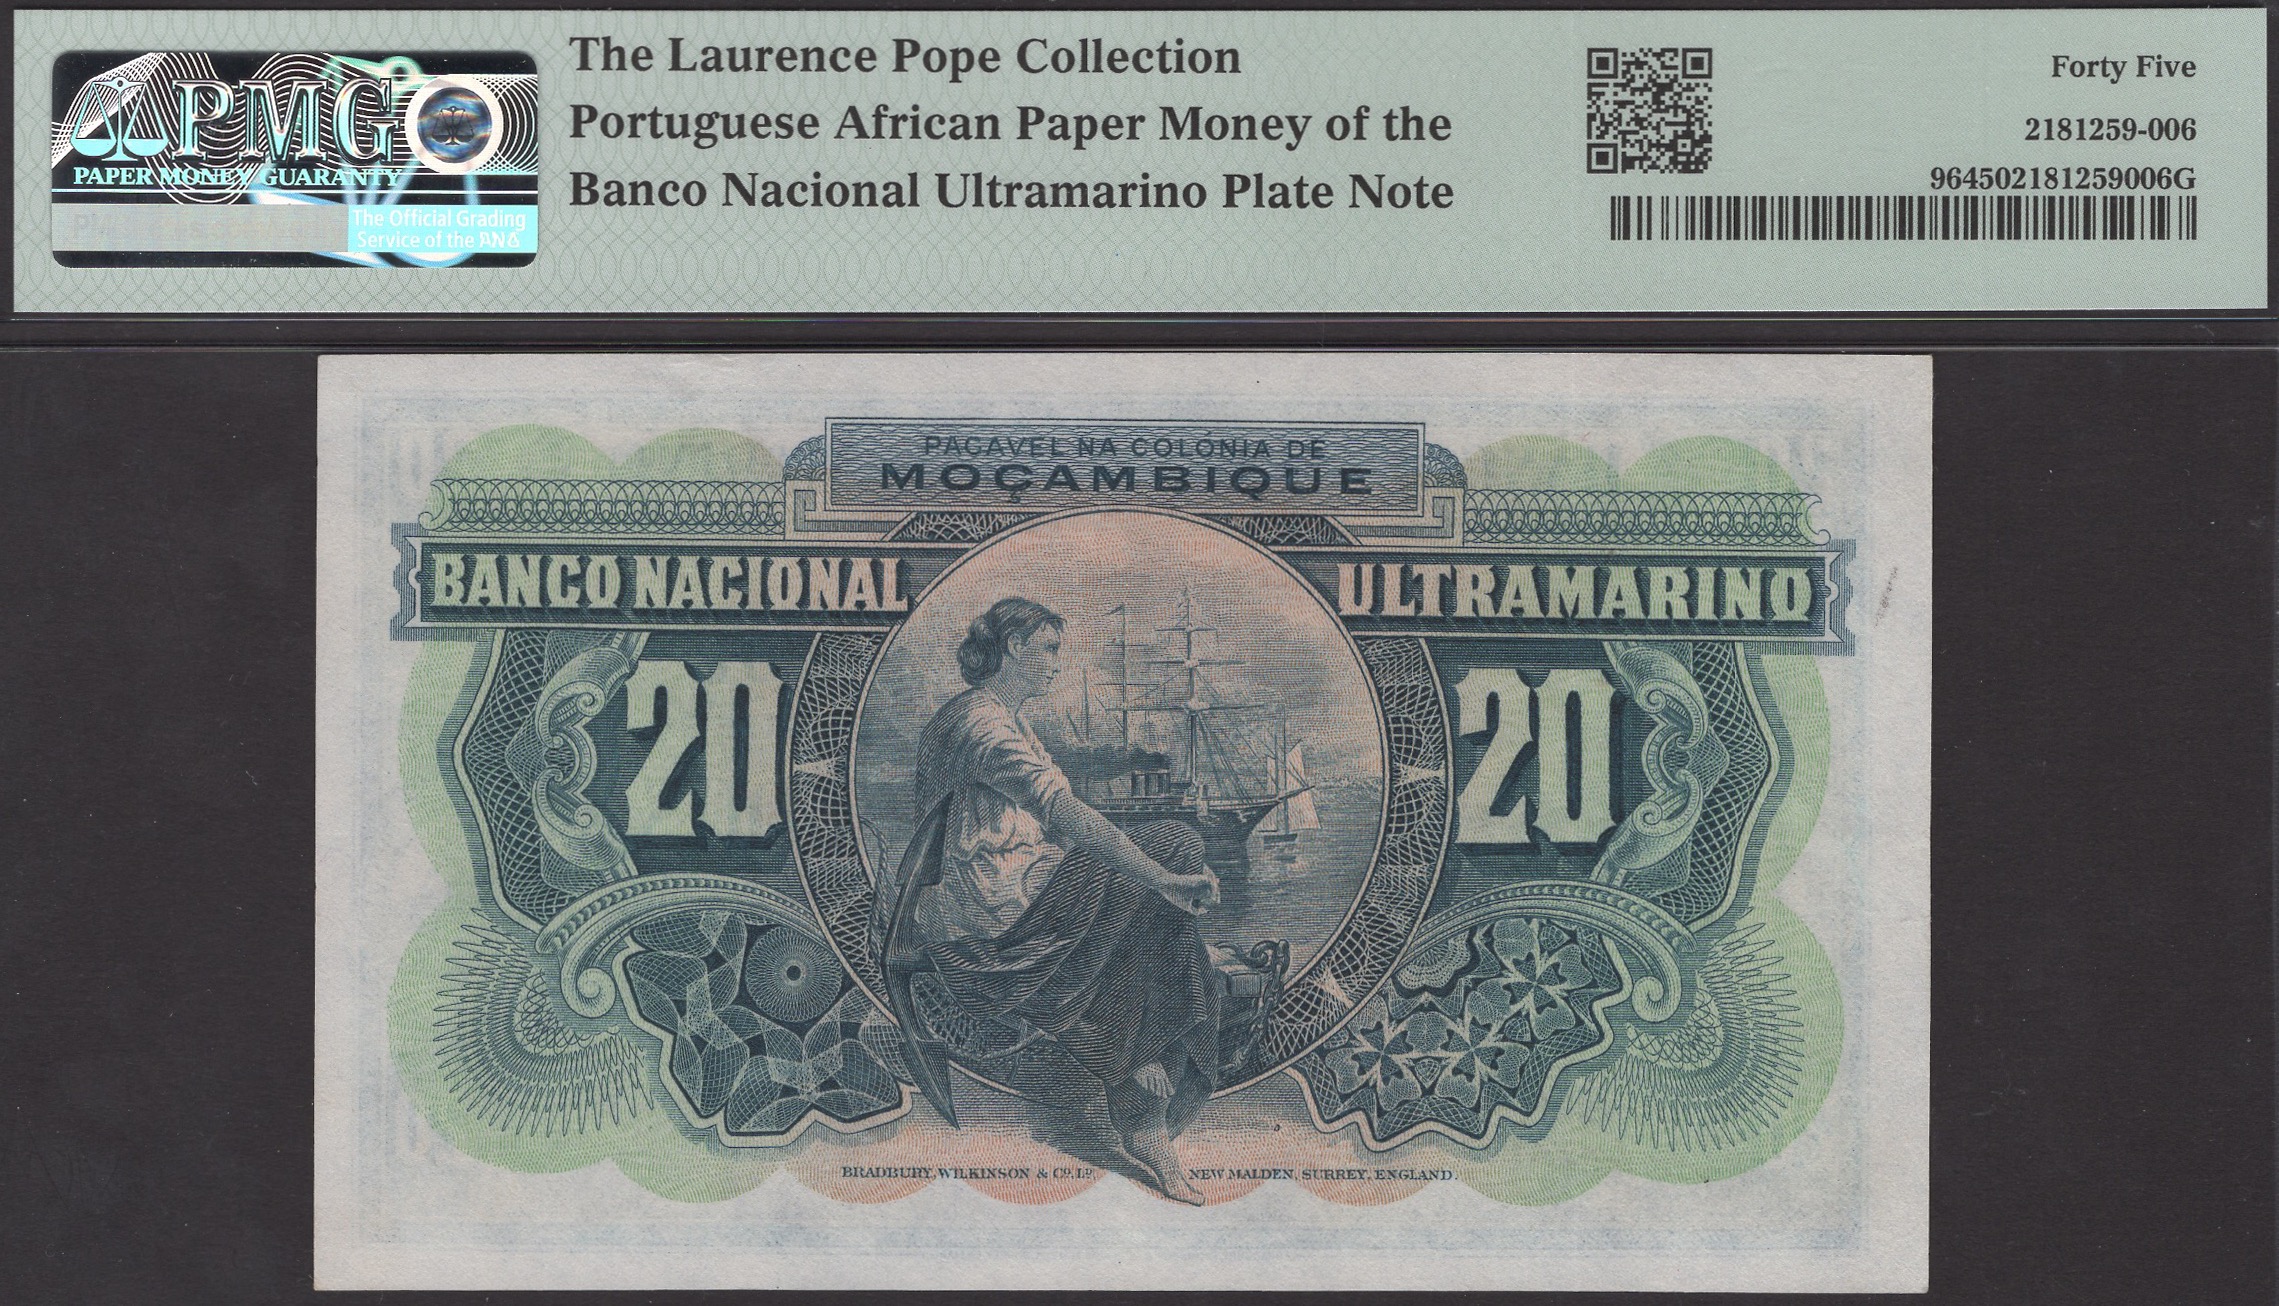 Banco Nacional Ultramarino, Mozambique, 20 Escudos, 25 November 1945, serial number... - Image 2 of 2